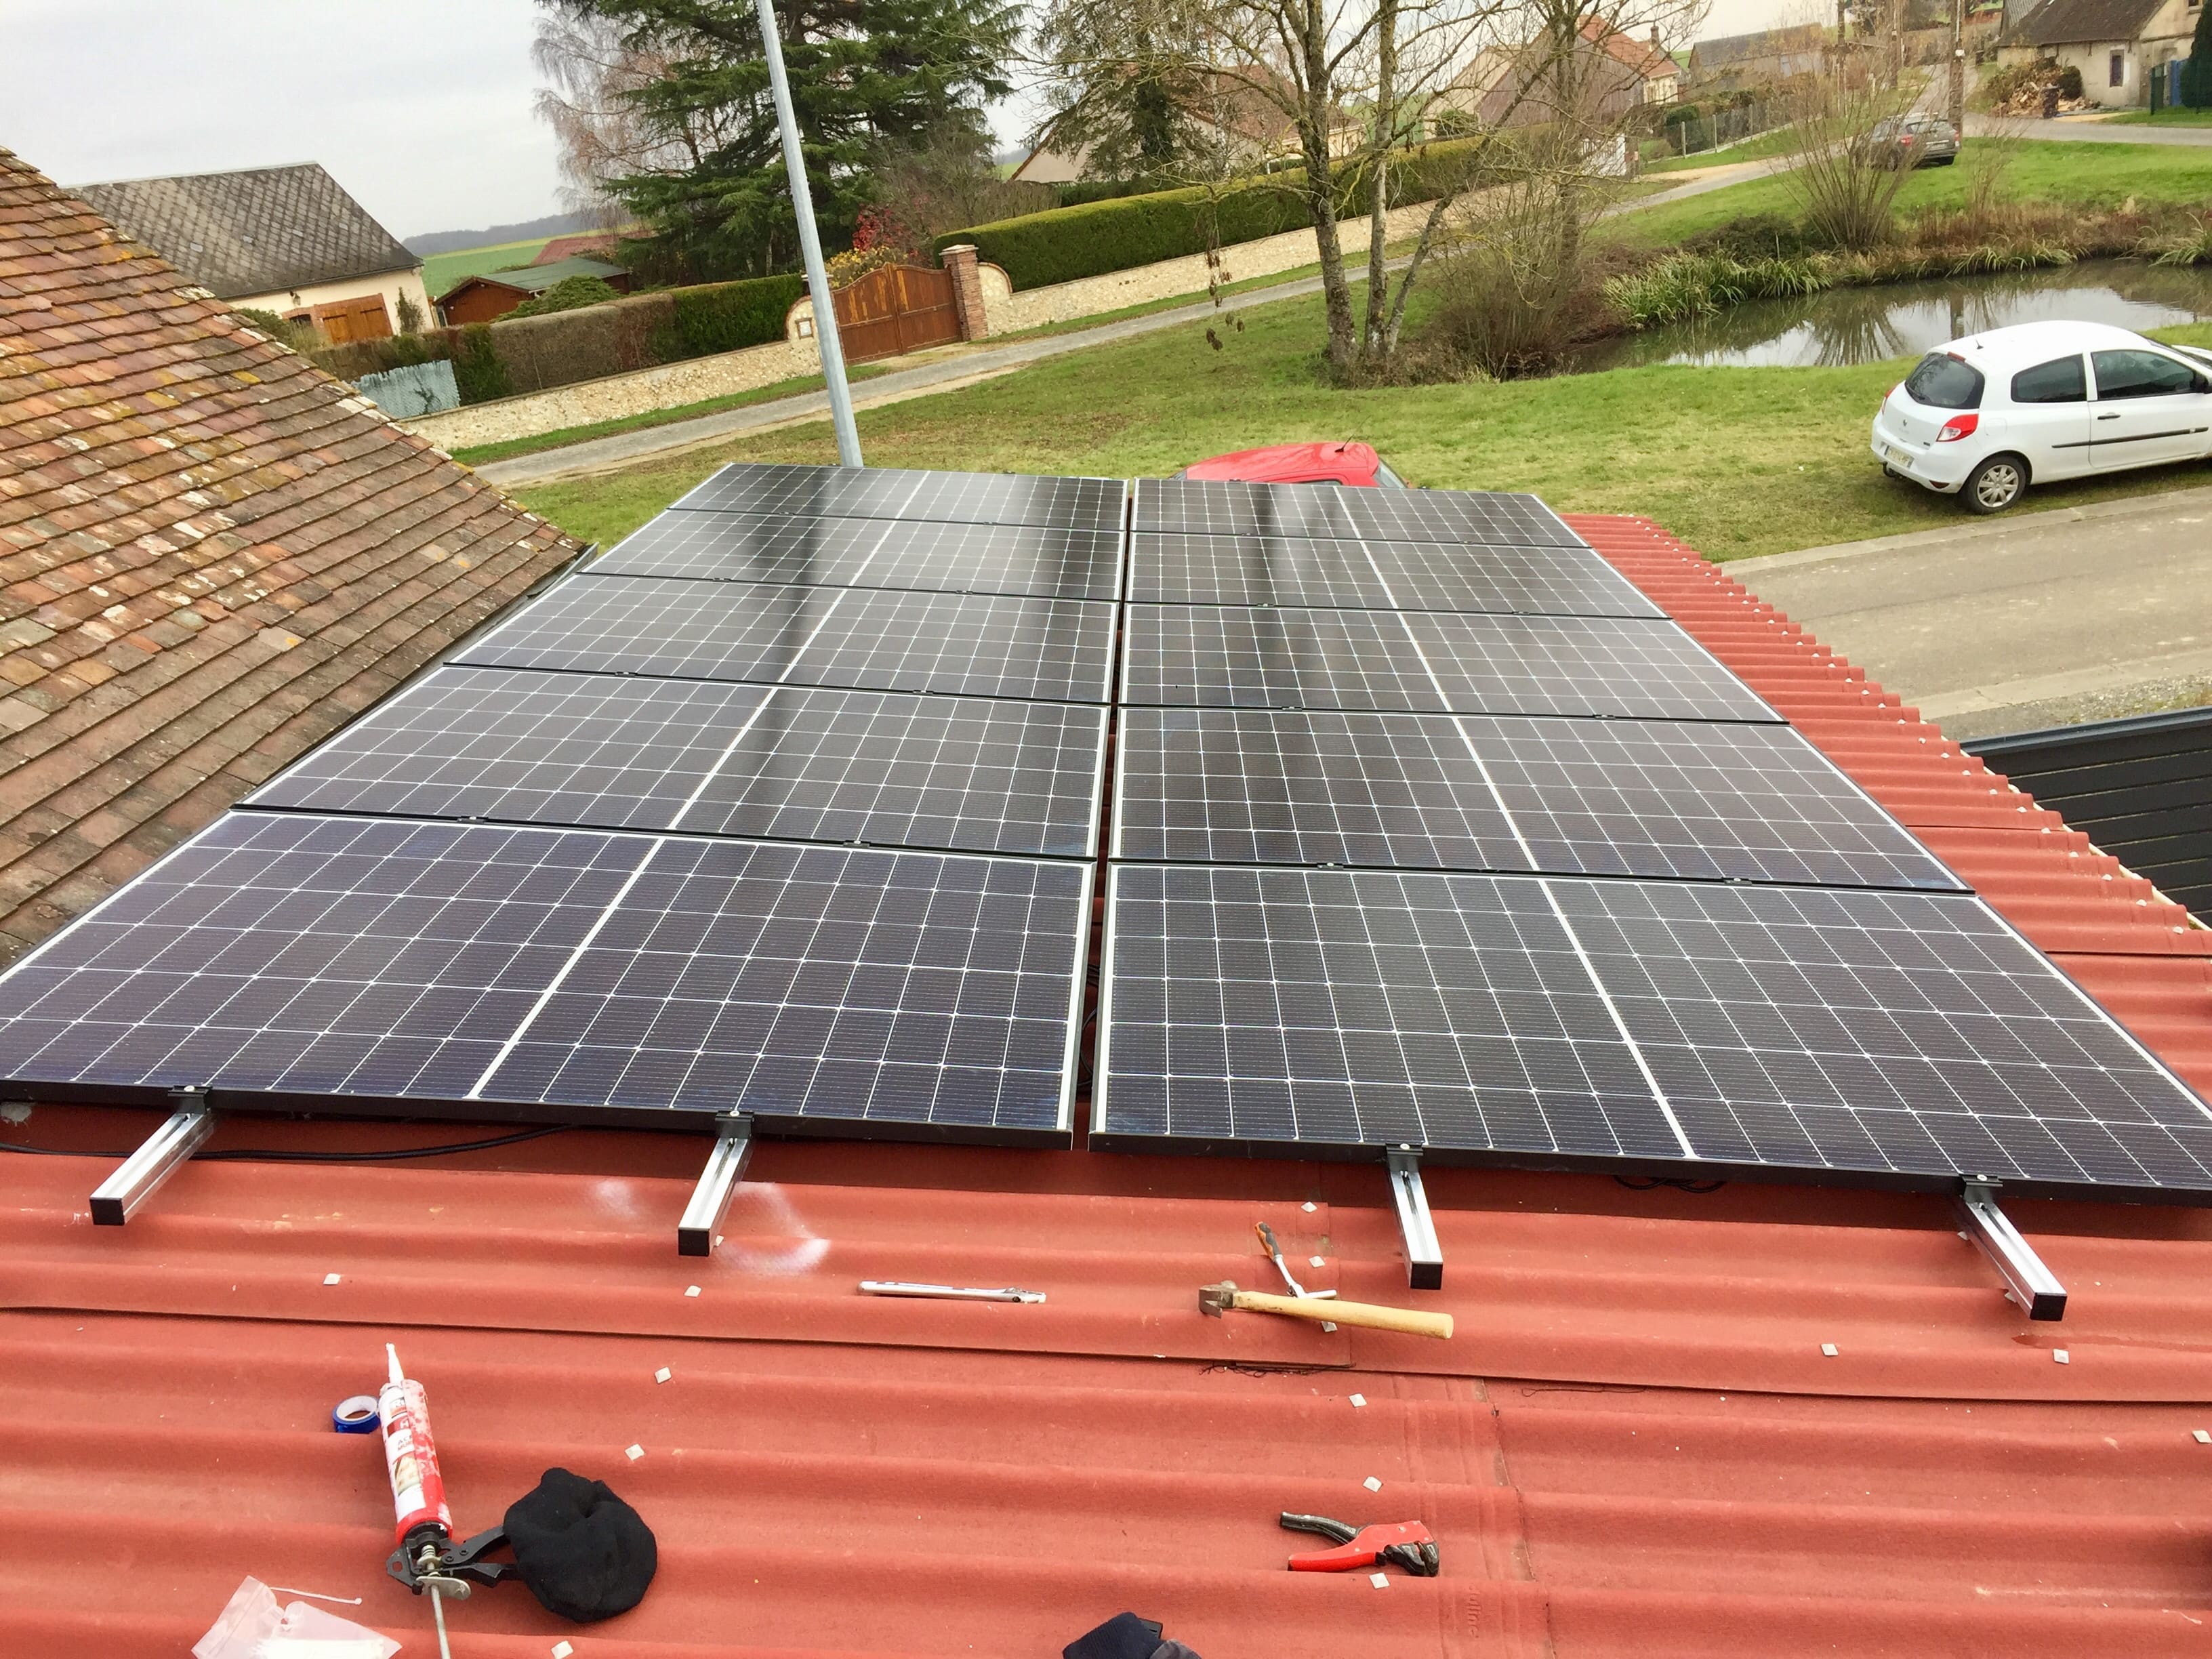 <span class="popup-mms-2">Installations de panneaux solaires sur toiture inclinée - 4100W</span>